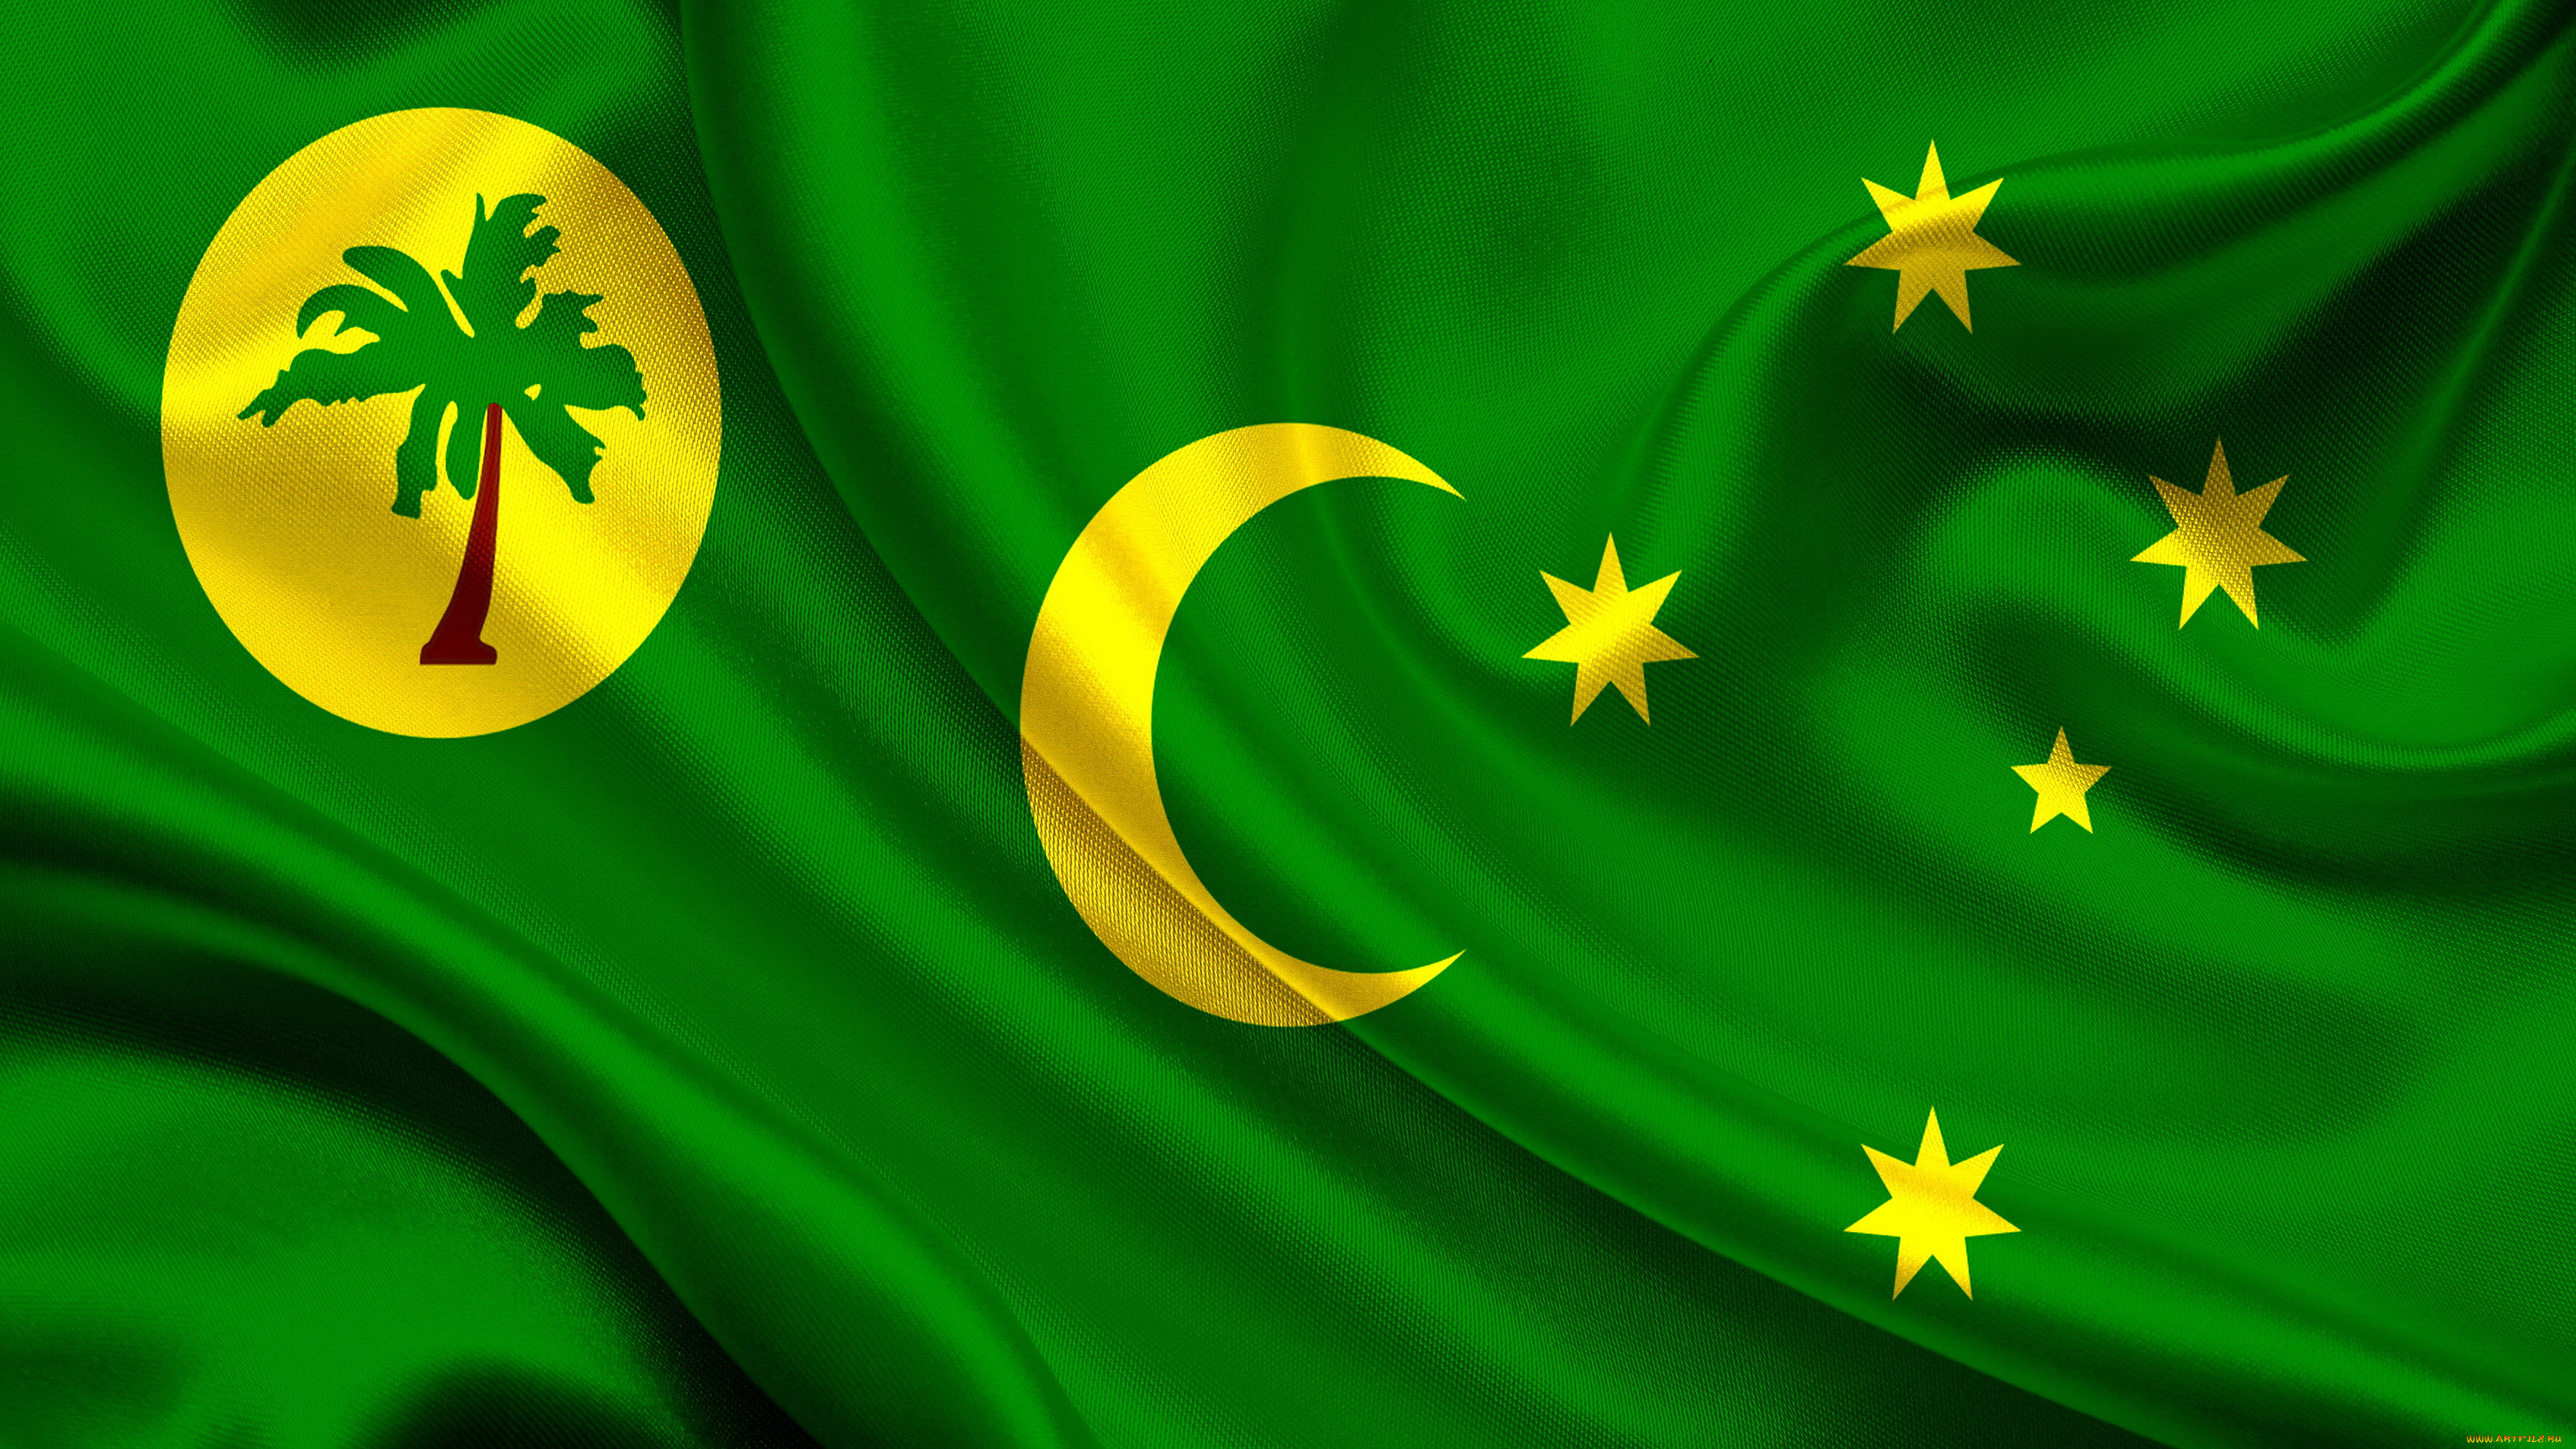 Зеленый флаг с луной. Флаг кокосовые килинг острова. Зеленый флаг. Зеленый флаг с желтым полумесяцем. Флаг зелёный со звездочками желтыми.